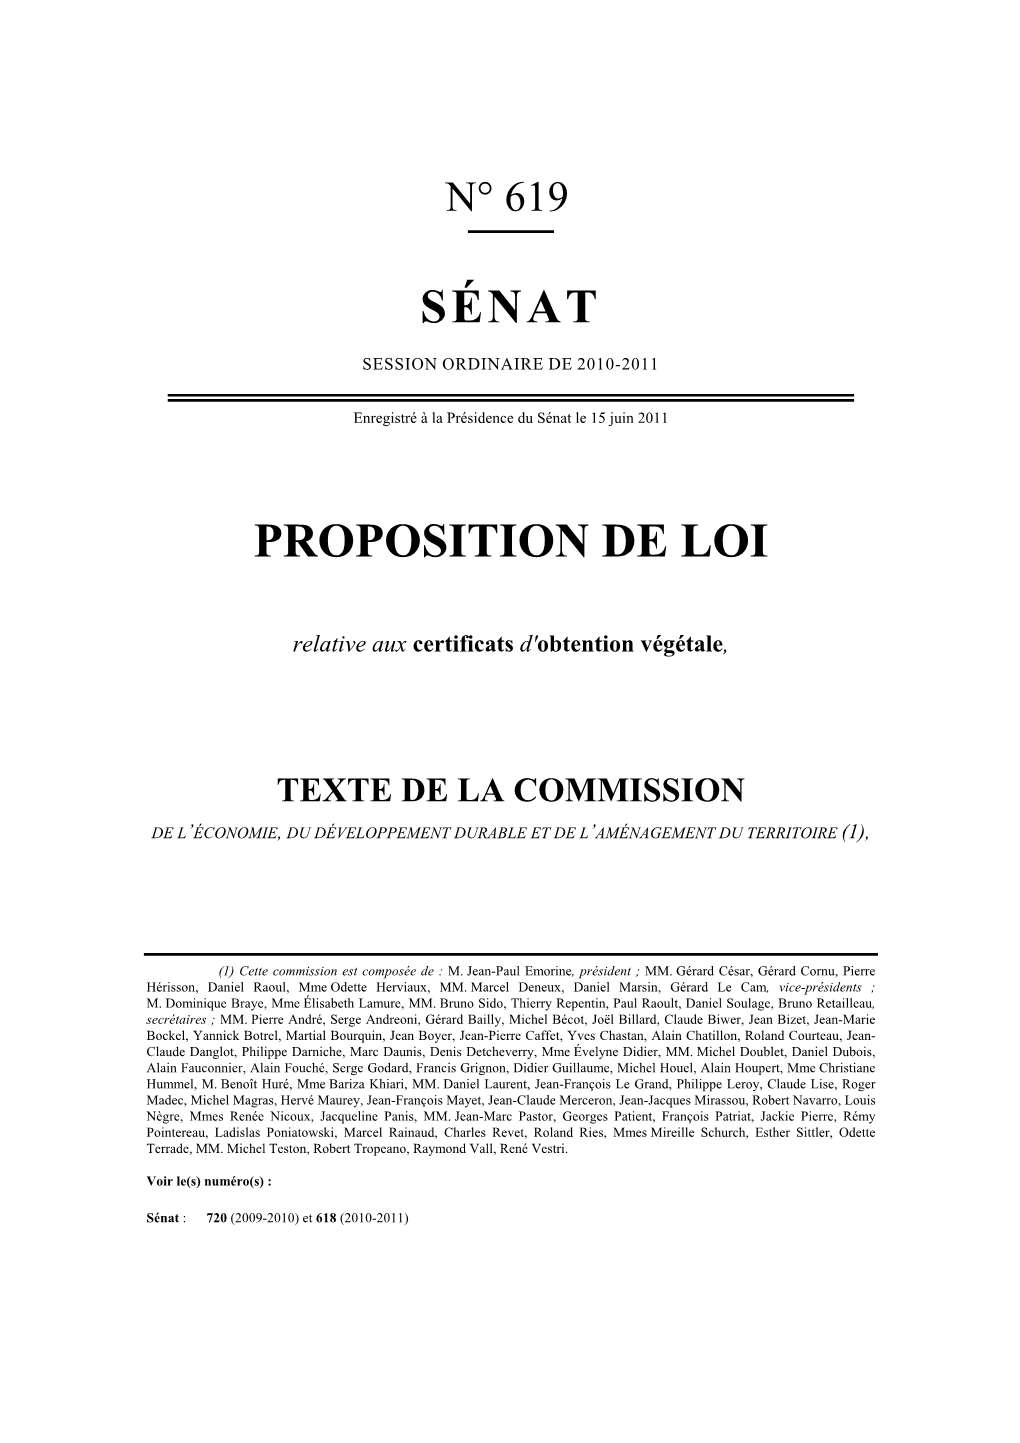 Proposition De Loi COV Enregistrée Le 15 Juin 2011